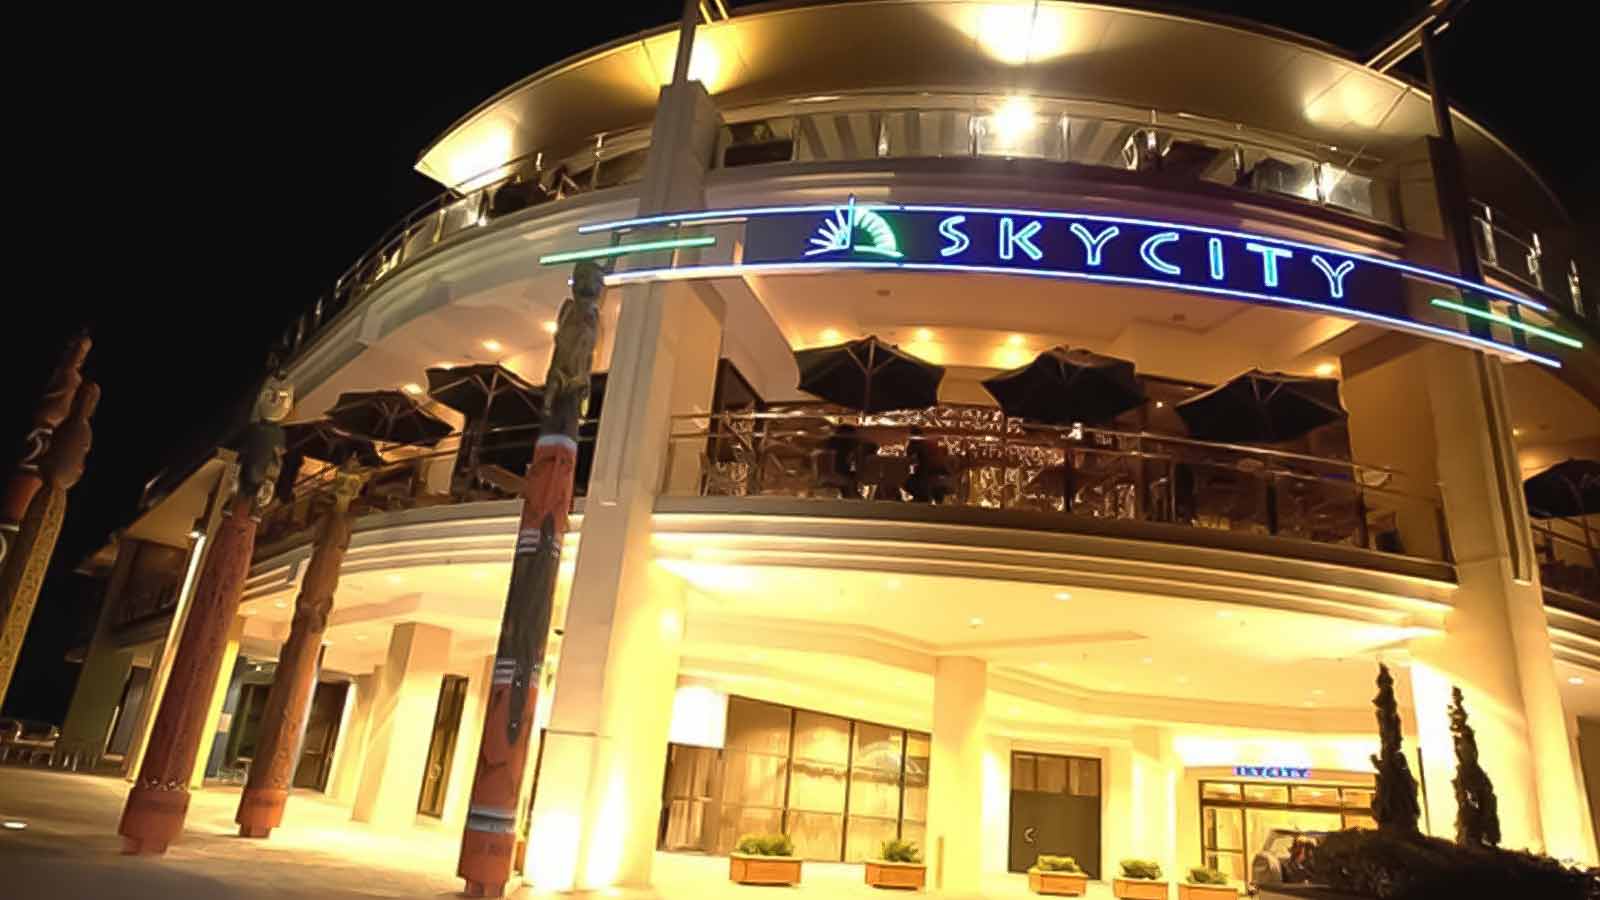 SkyCity Hamilton Casino